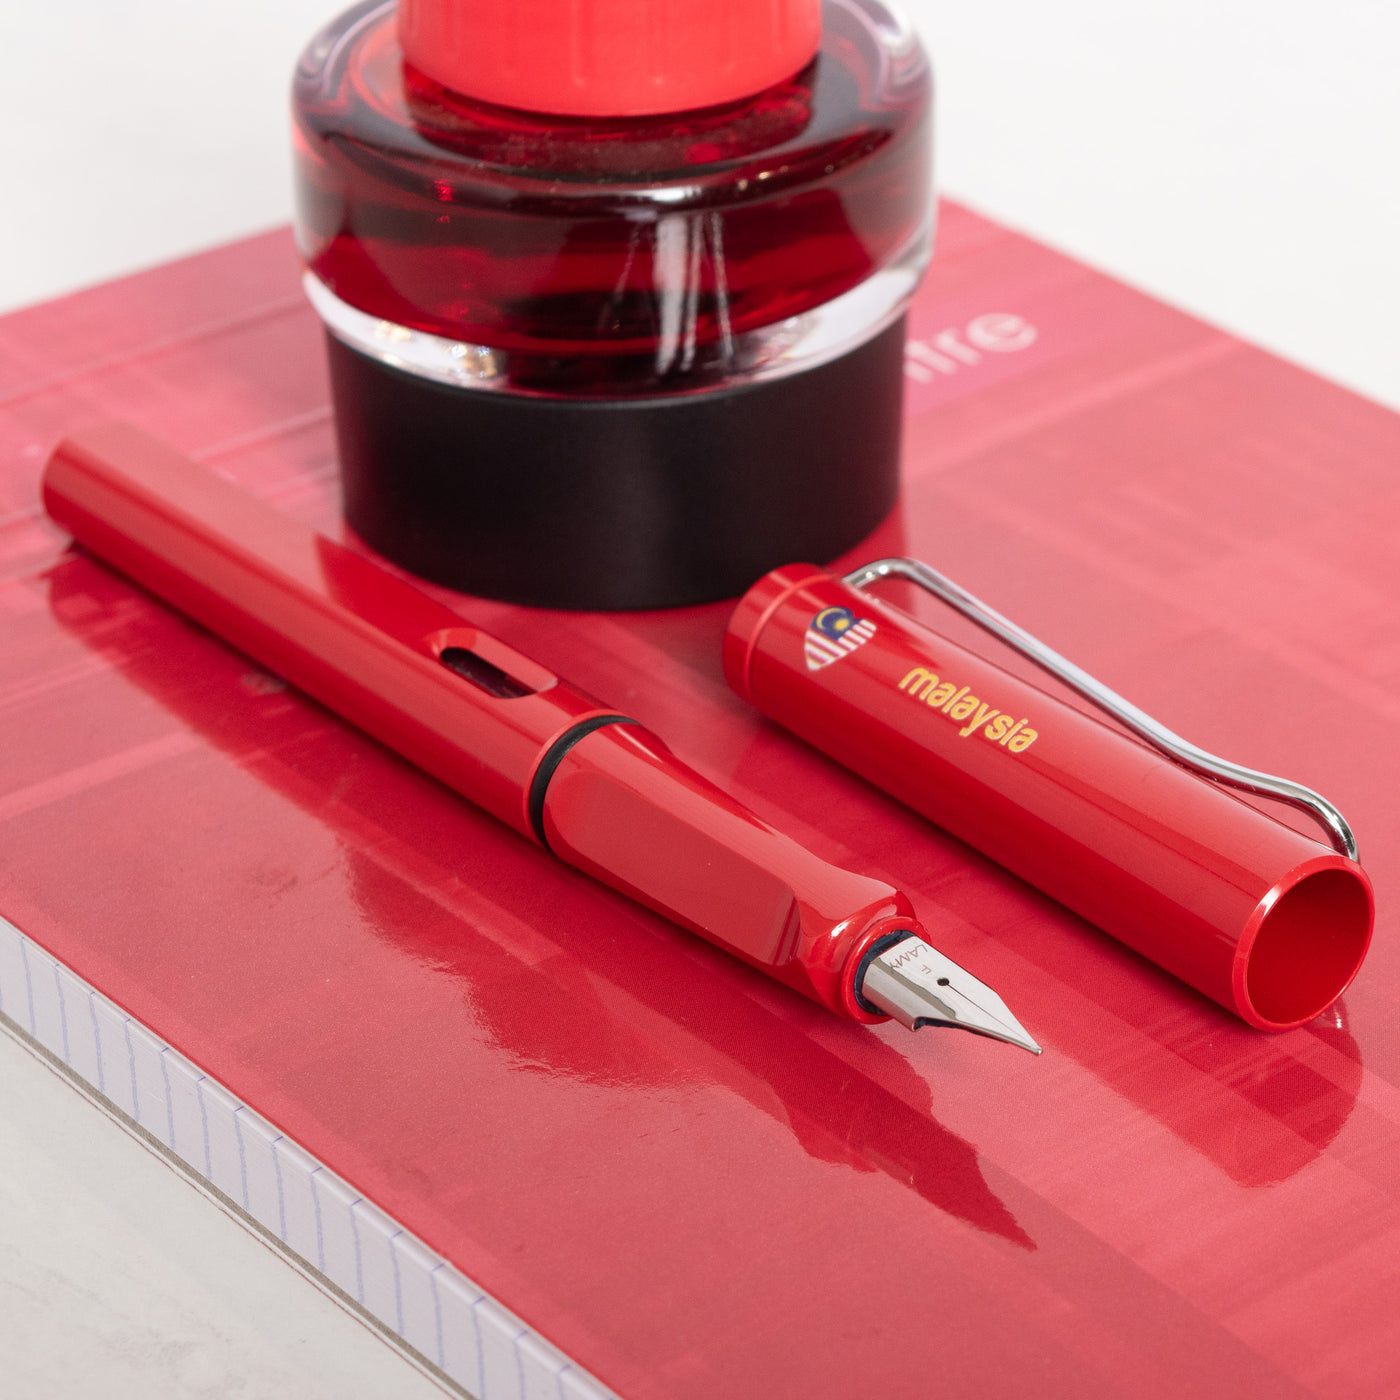 LAMY Safari Malaysia Special Edition Red Fountain Pen plastic